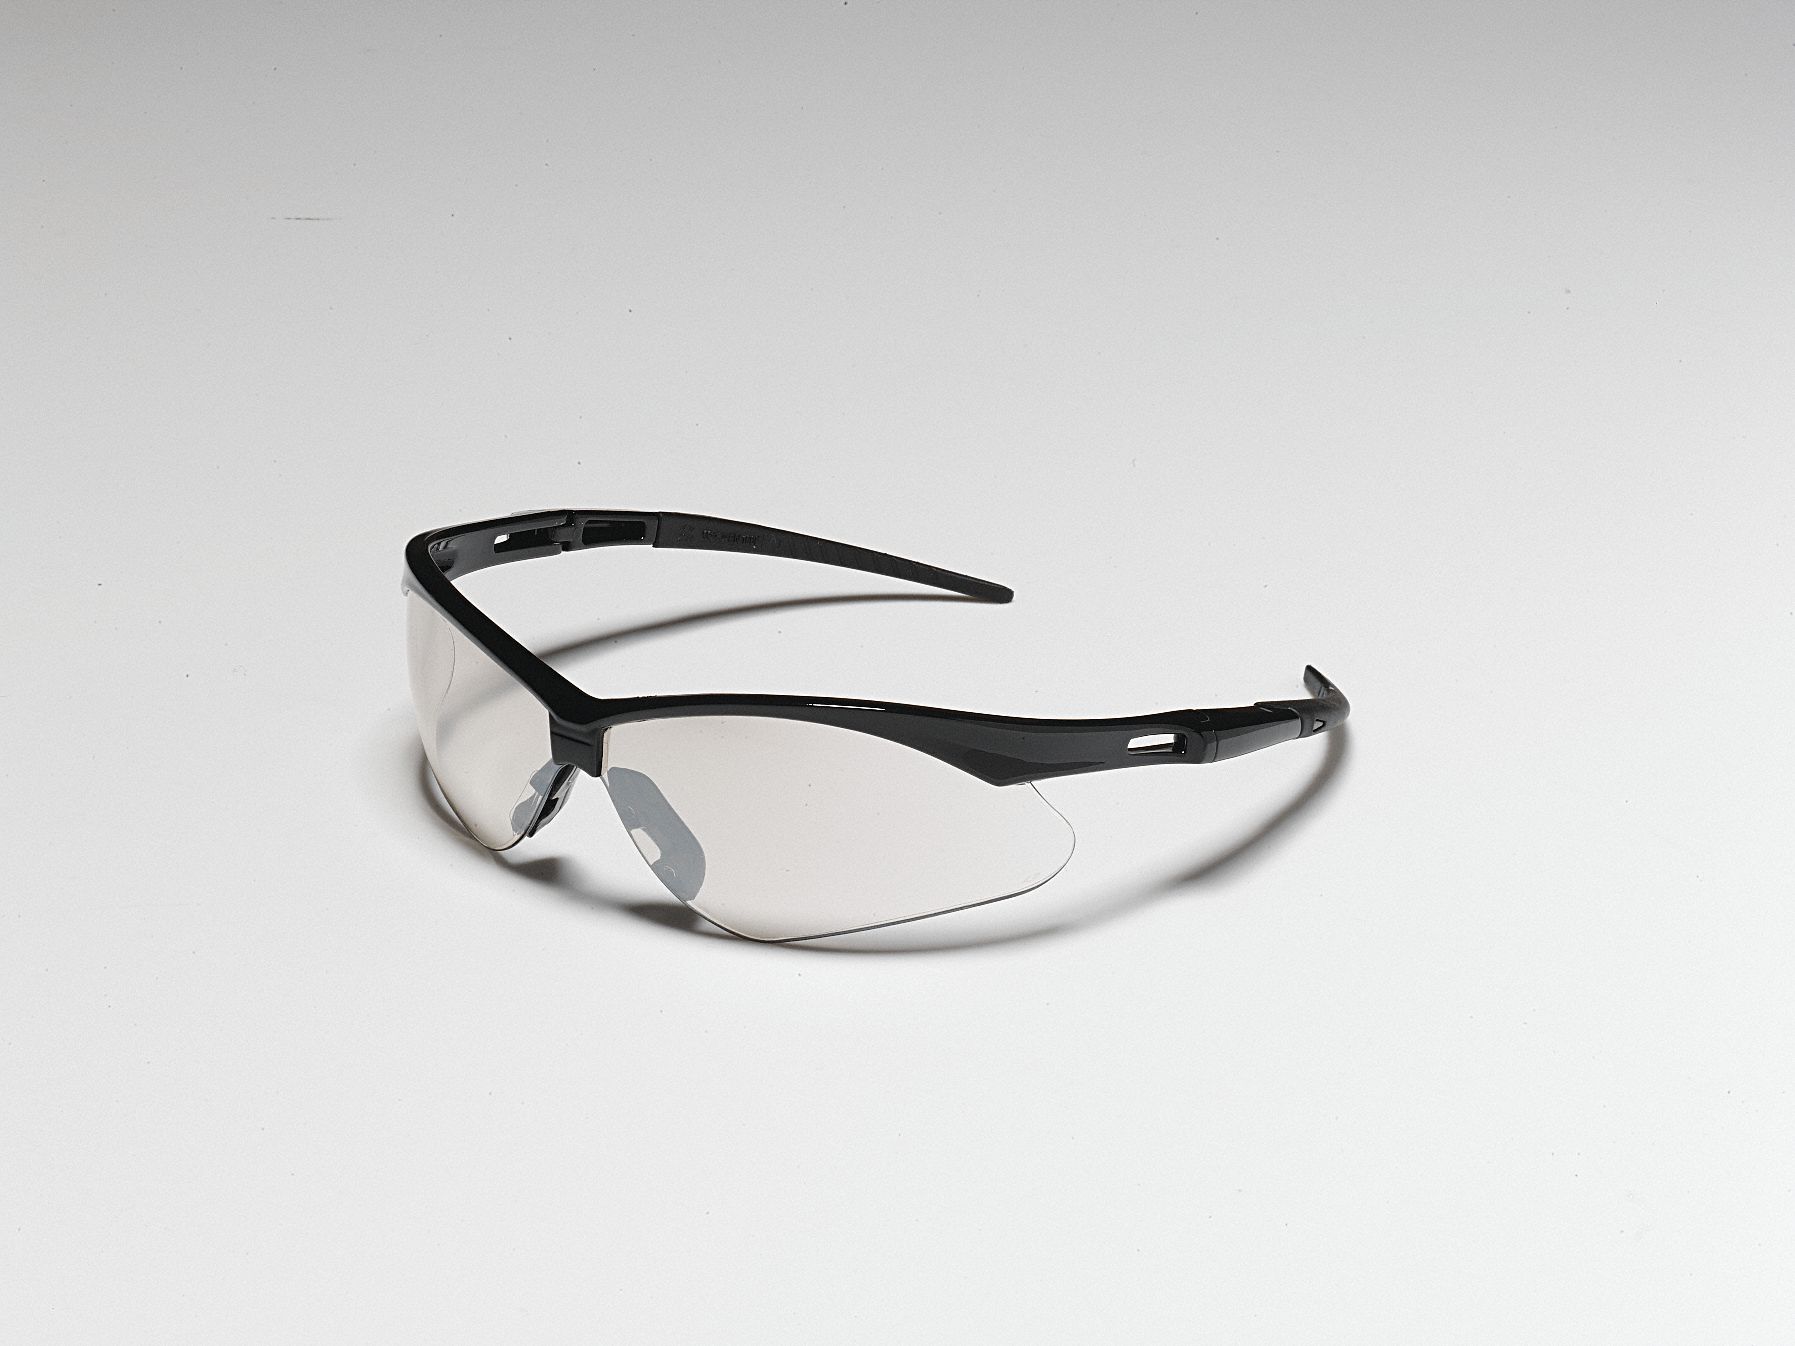 Kleenguard V30 Nemesis Scratch Resistant Safety Glasses Indoor Outdoor Lens Color 2uyf7